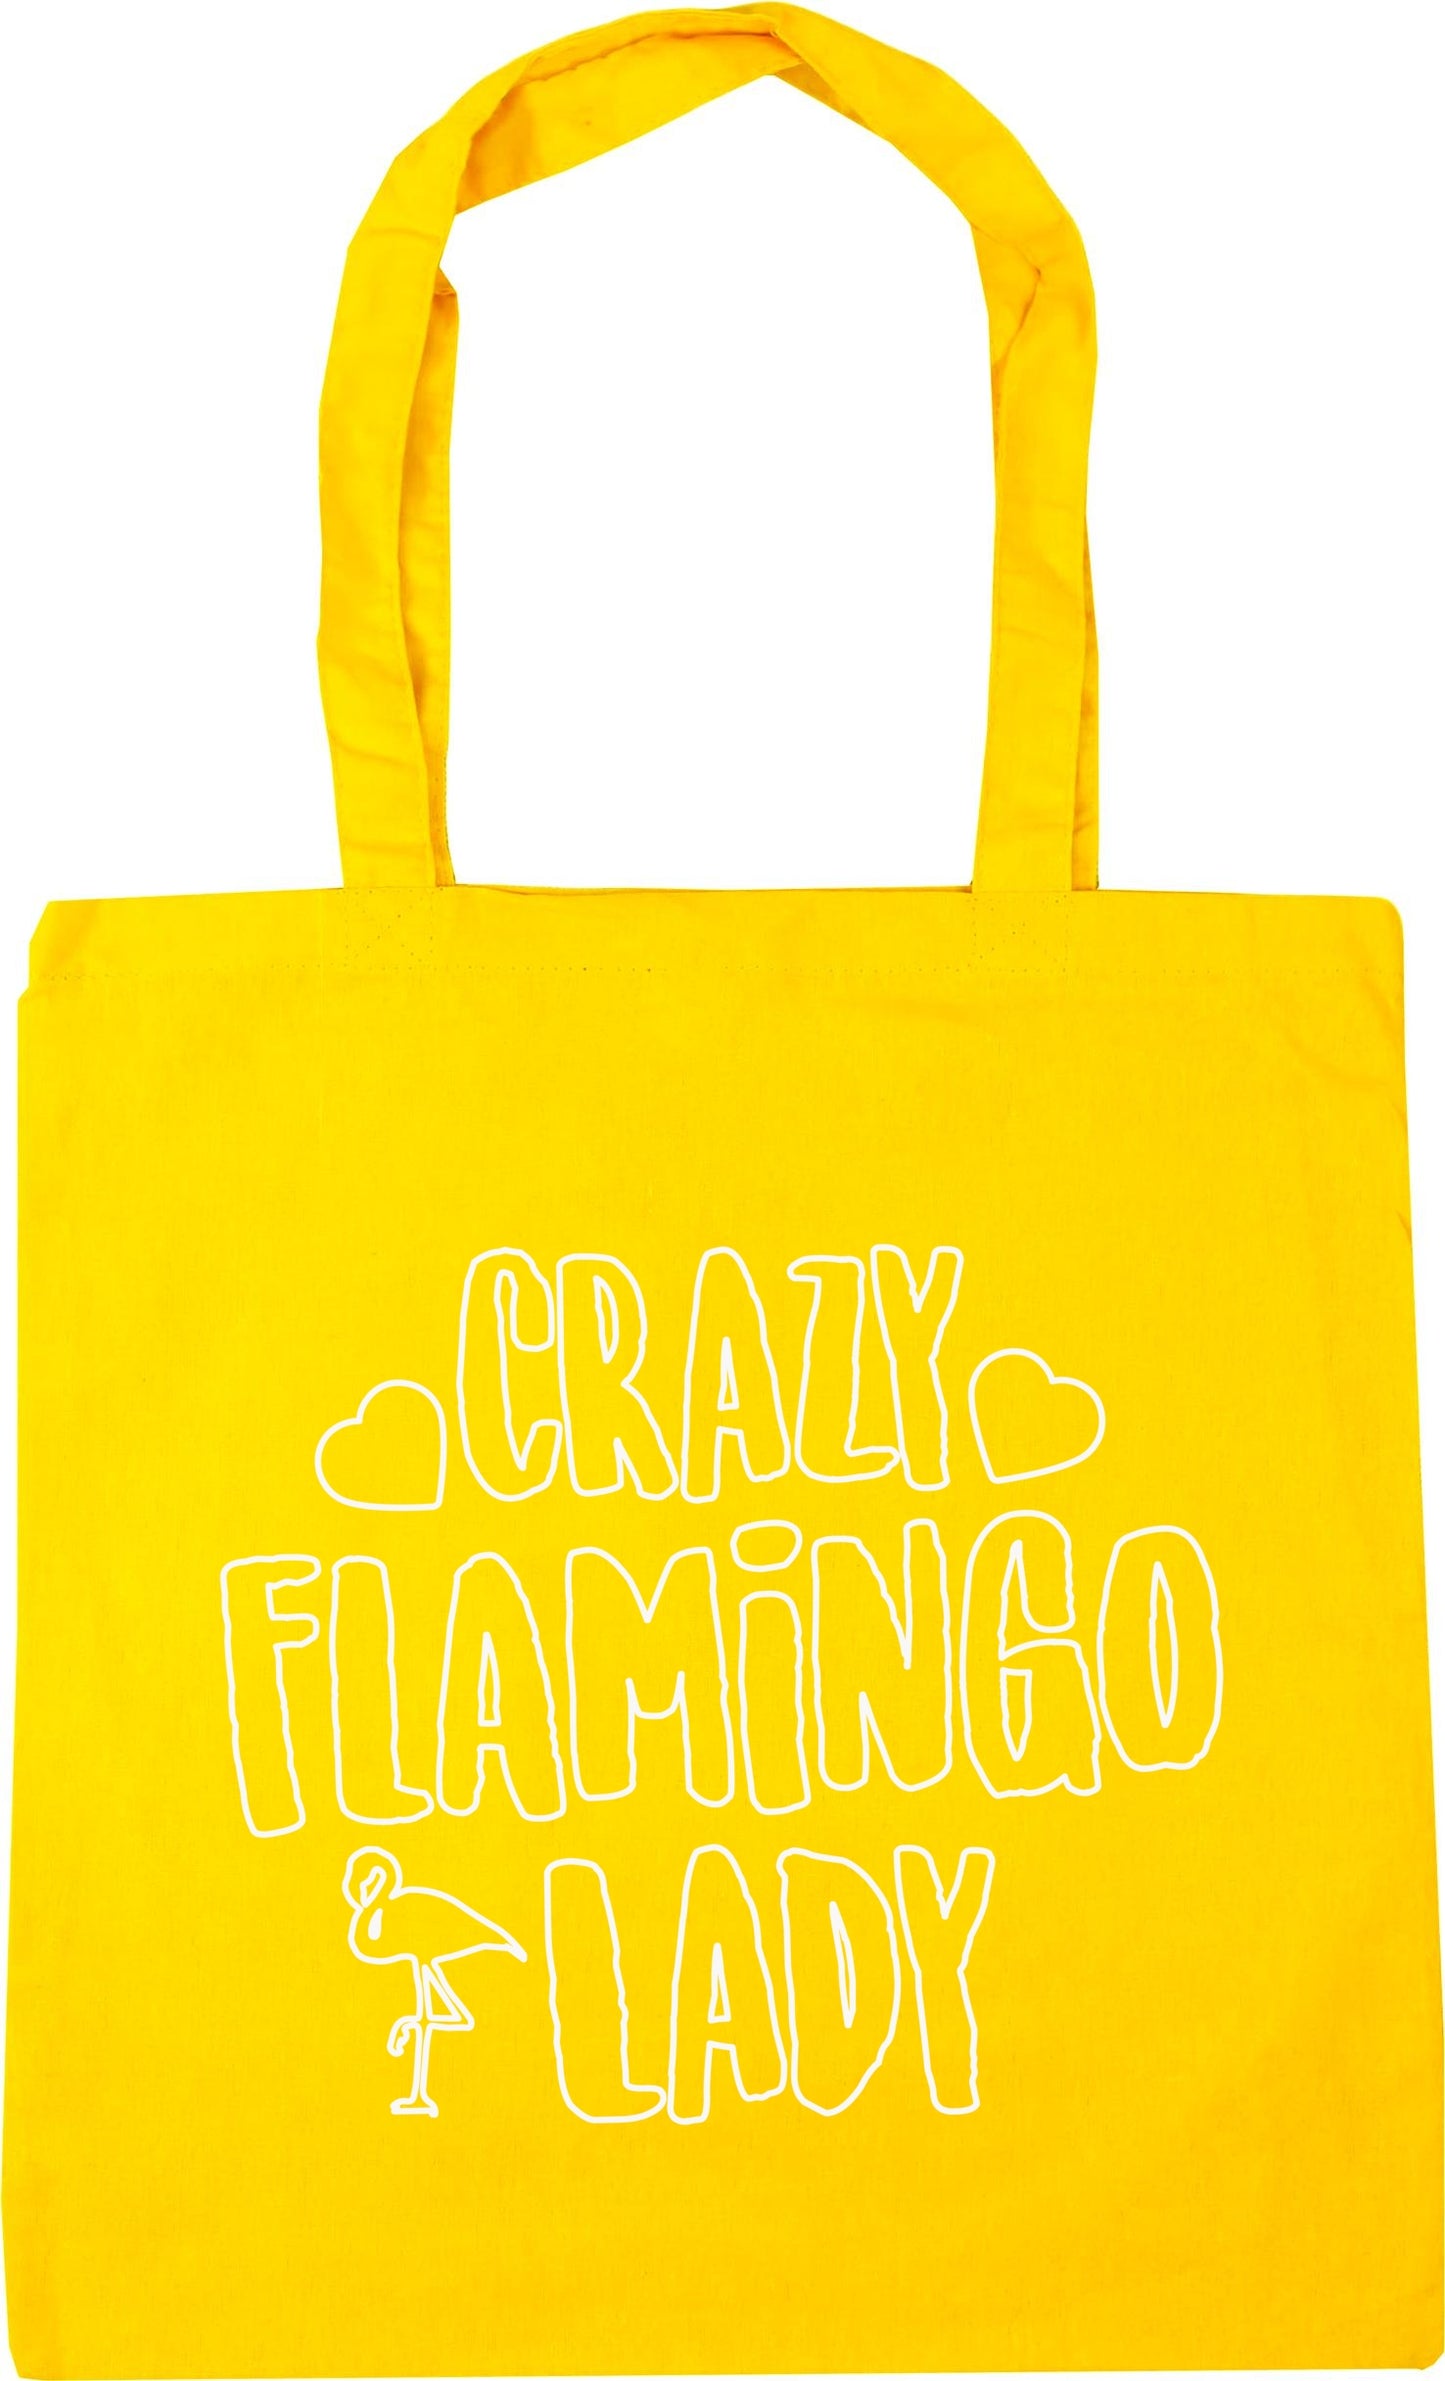 Crazy flamingo lady Tote Bag